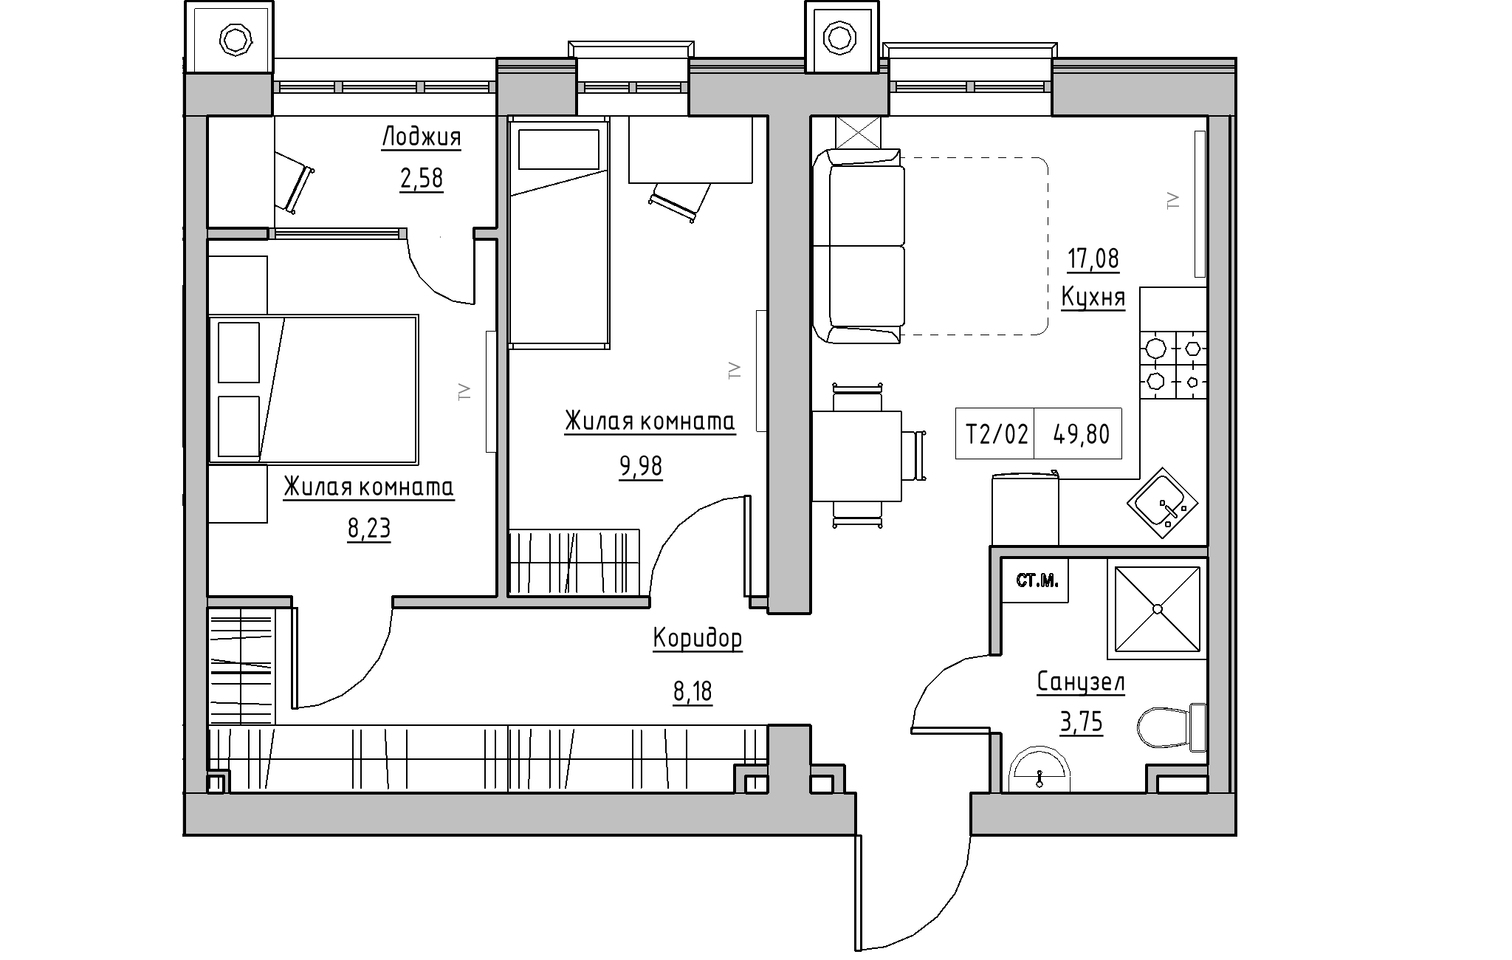 Планування 2-к квартира площею 49.8м2, KS-010-01/0007.